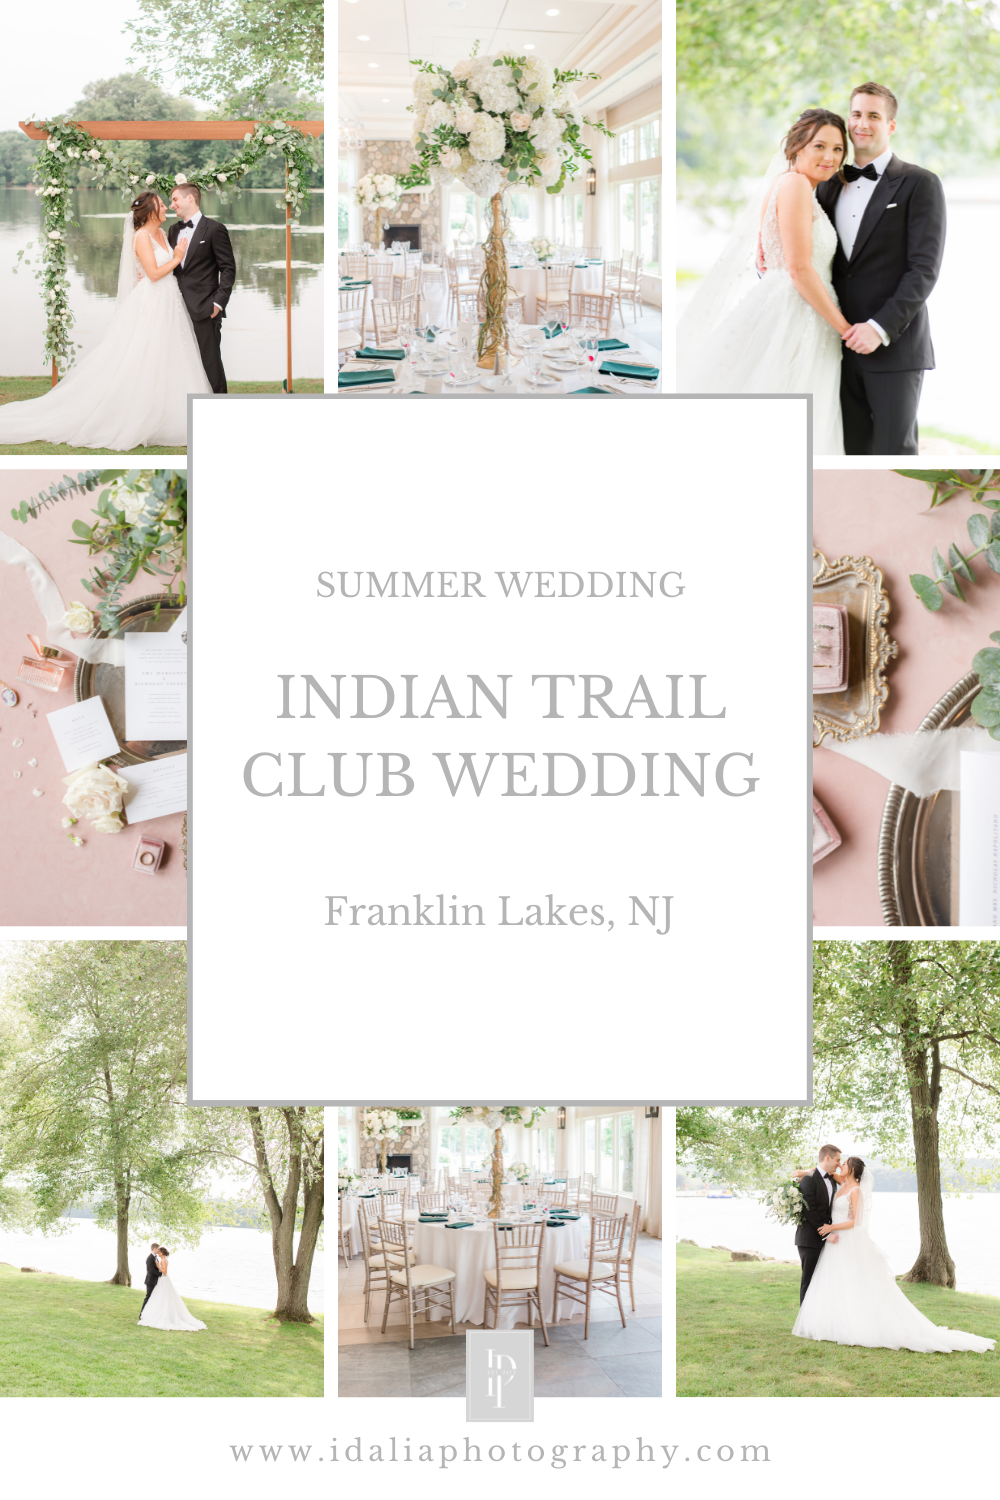 Indian Trail Club Wedding in Franklin Lakes, NJ